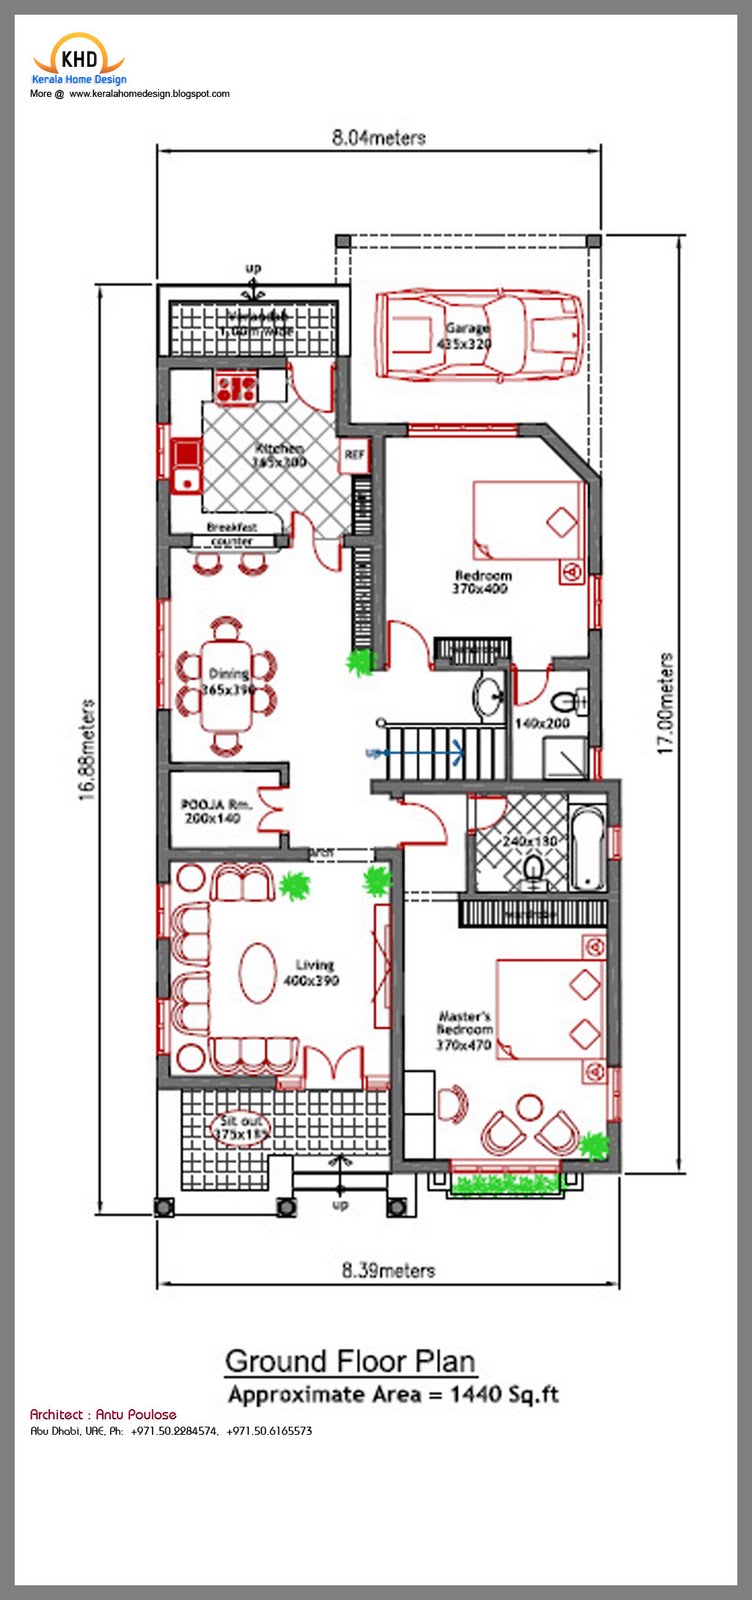 ground floor plan 1440